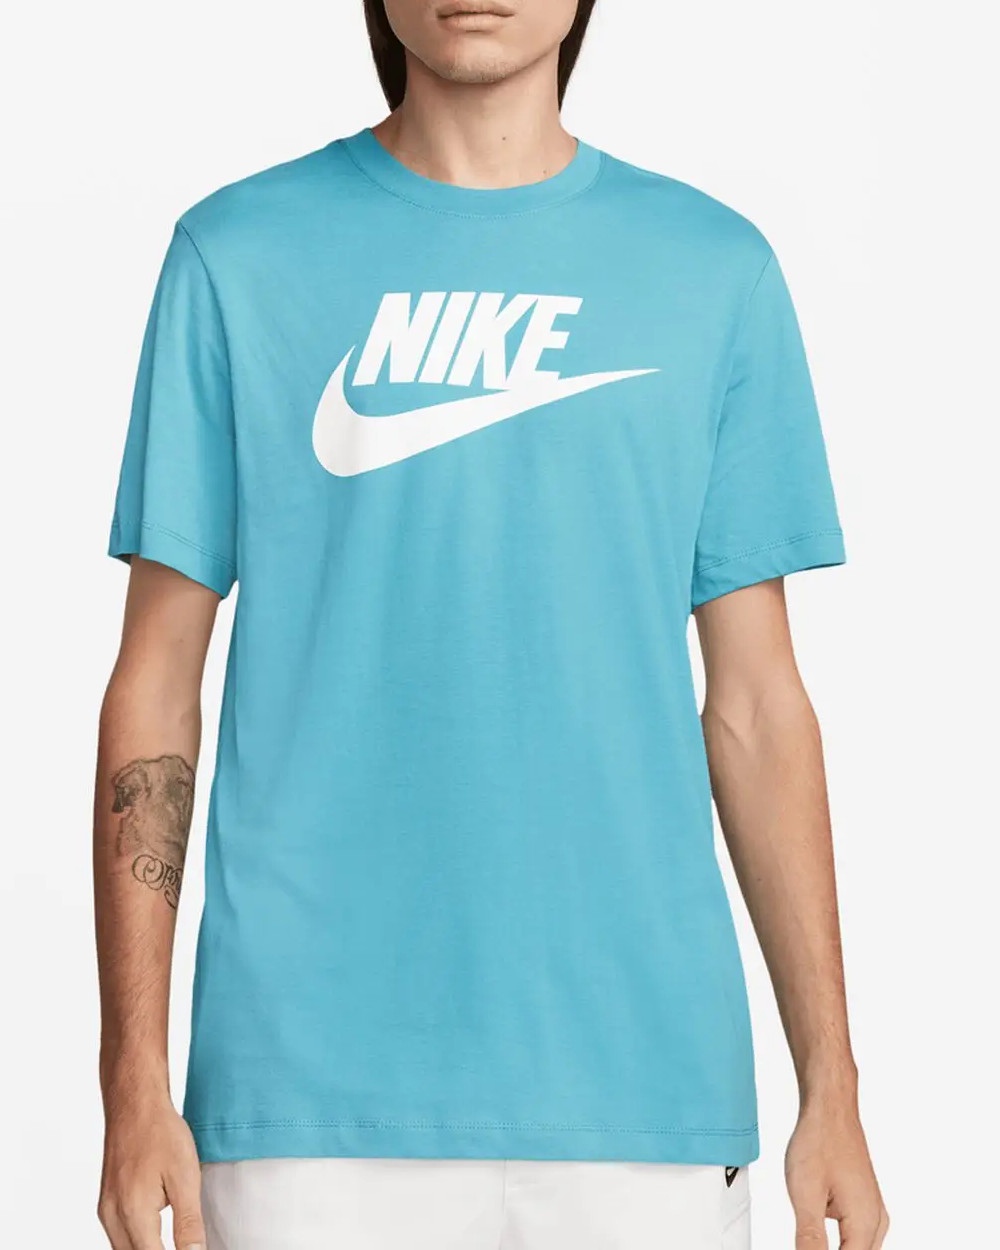  T-shirt maglia maglietta UOMO Nike Azzurro NSW TEE ICON FUTURA Cotone